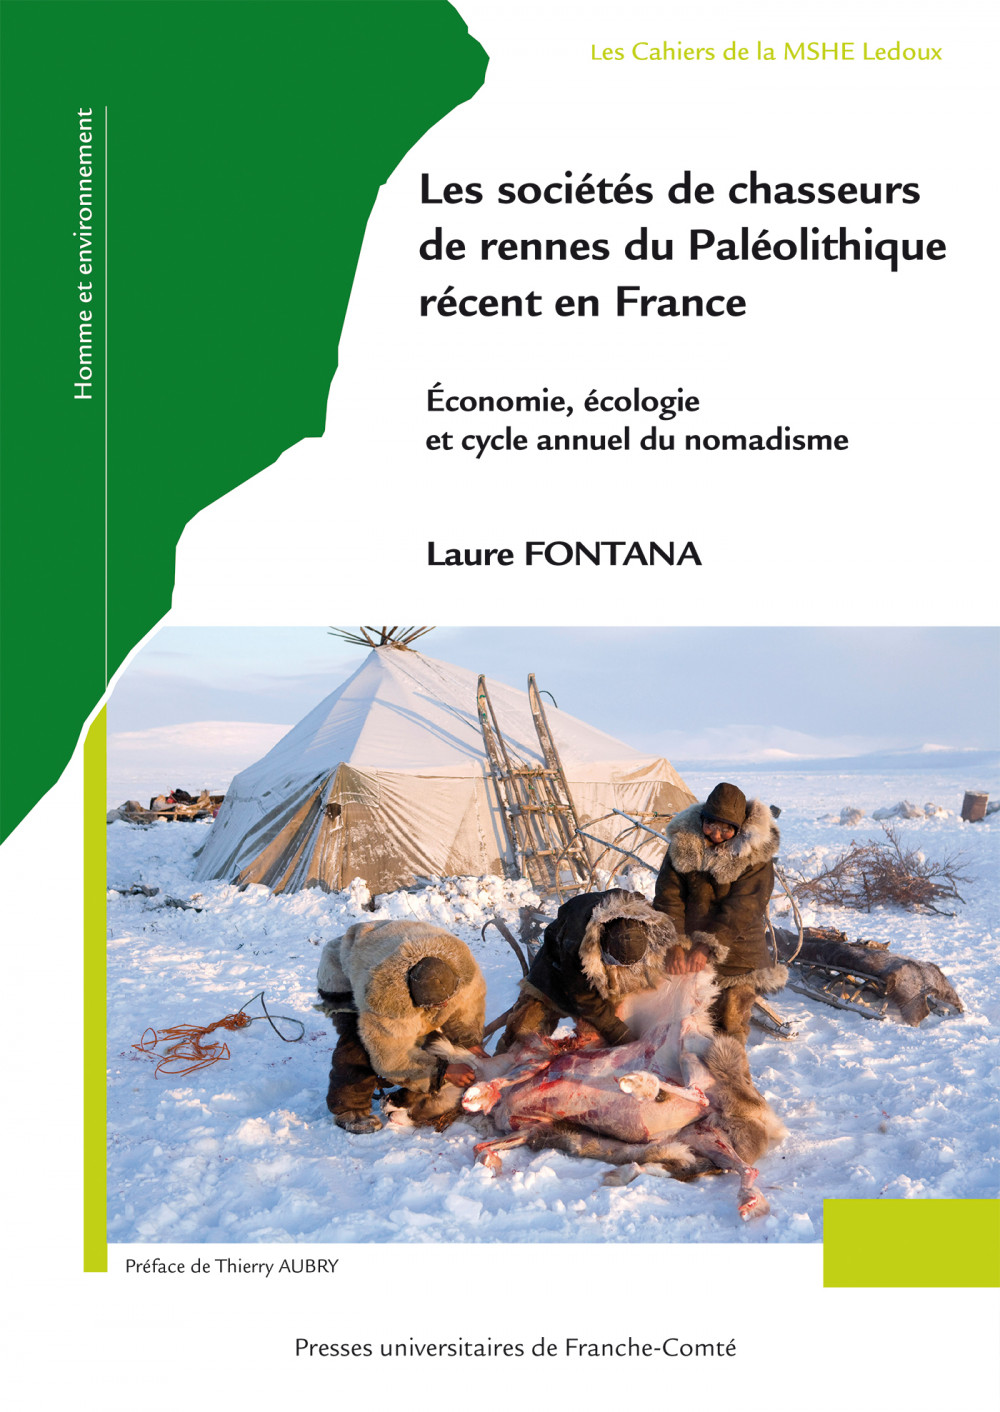 Les sociétés de chasseurs de rennes du Paléolithique récent en France